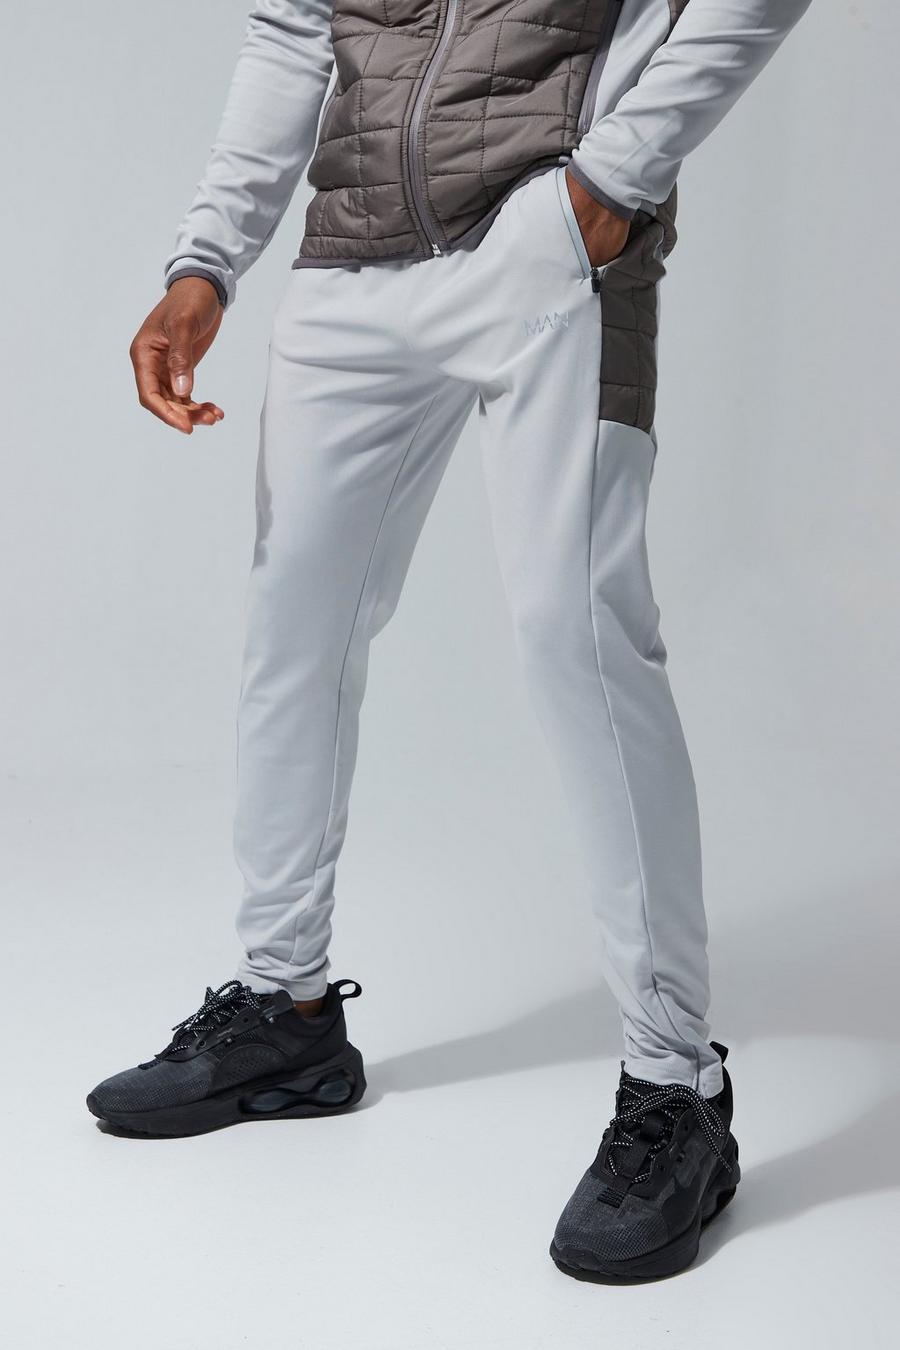 Pantalón deportivo MAN Active pitillo acolchado híbrido, Grey grigio